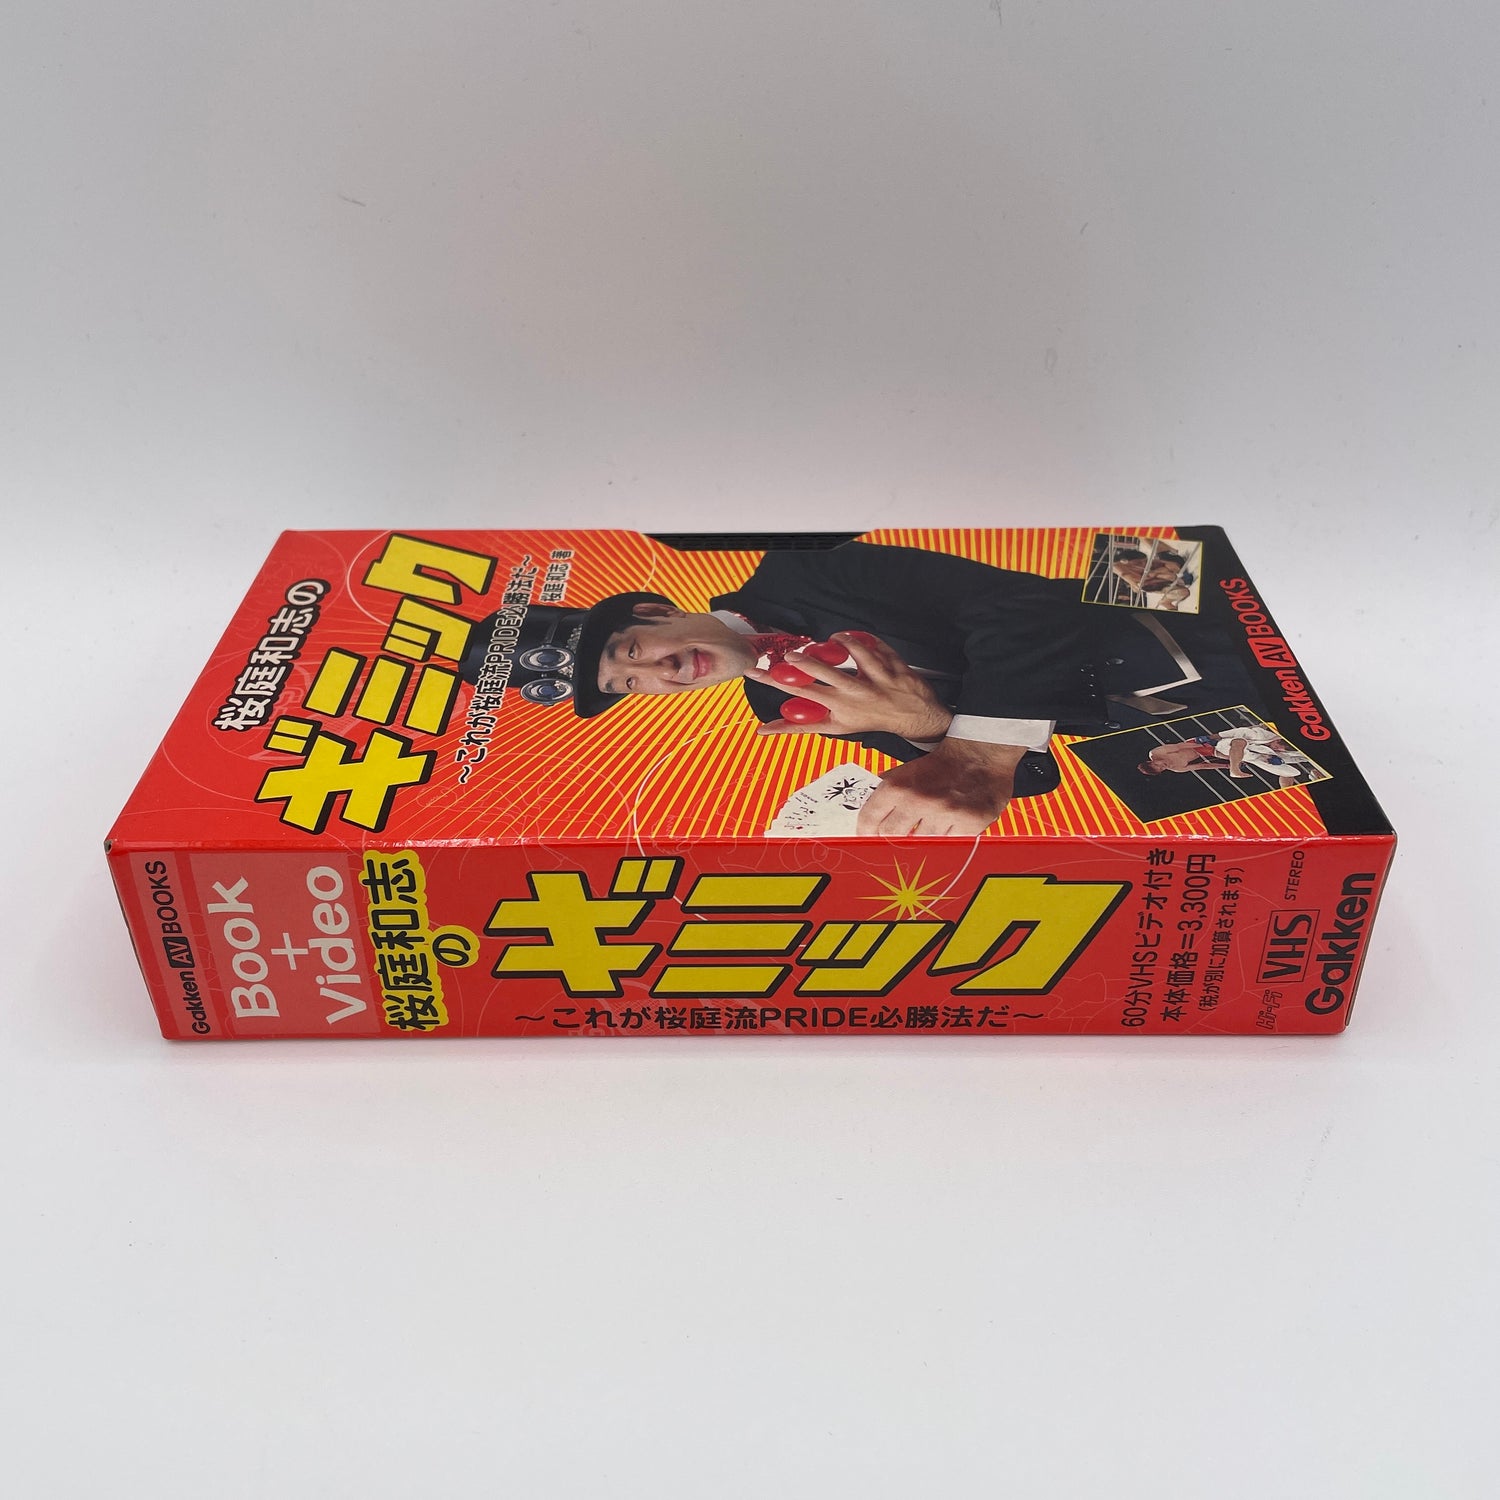 ギミック VHS & 桜庭和志著 (中古)